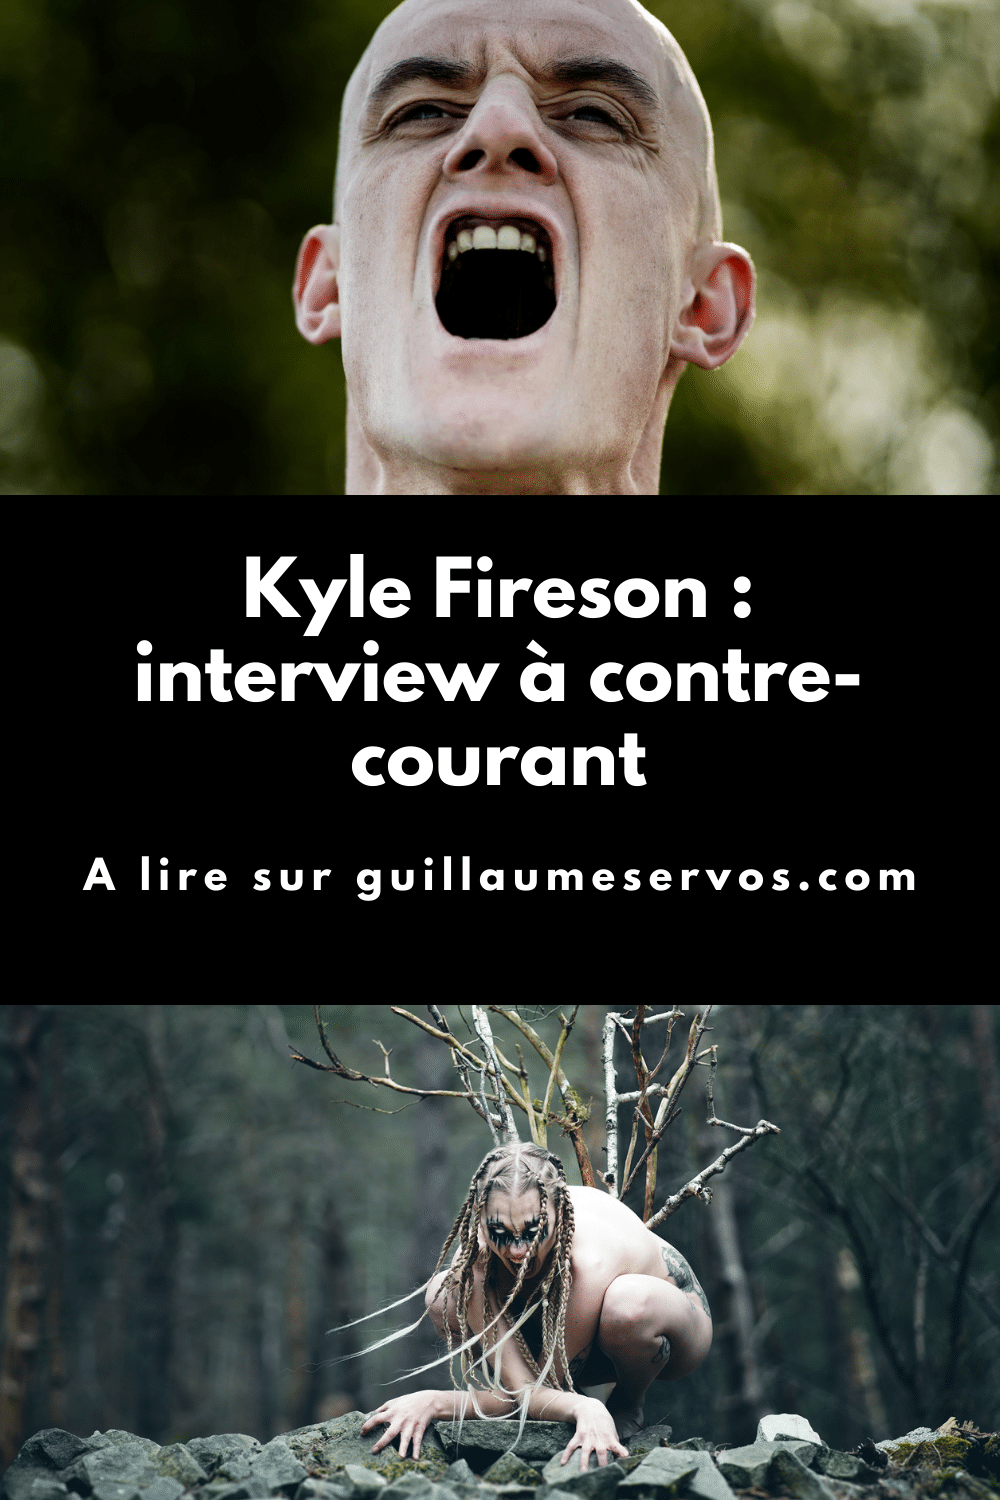 Interview à contre-courant avec Kyle Fireson, photographe & modèle